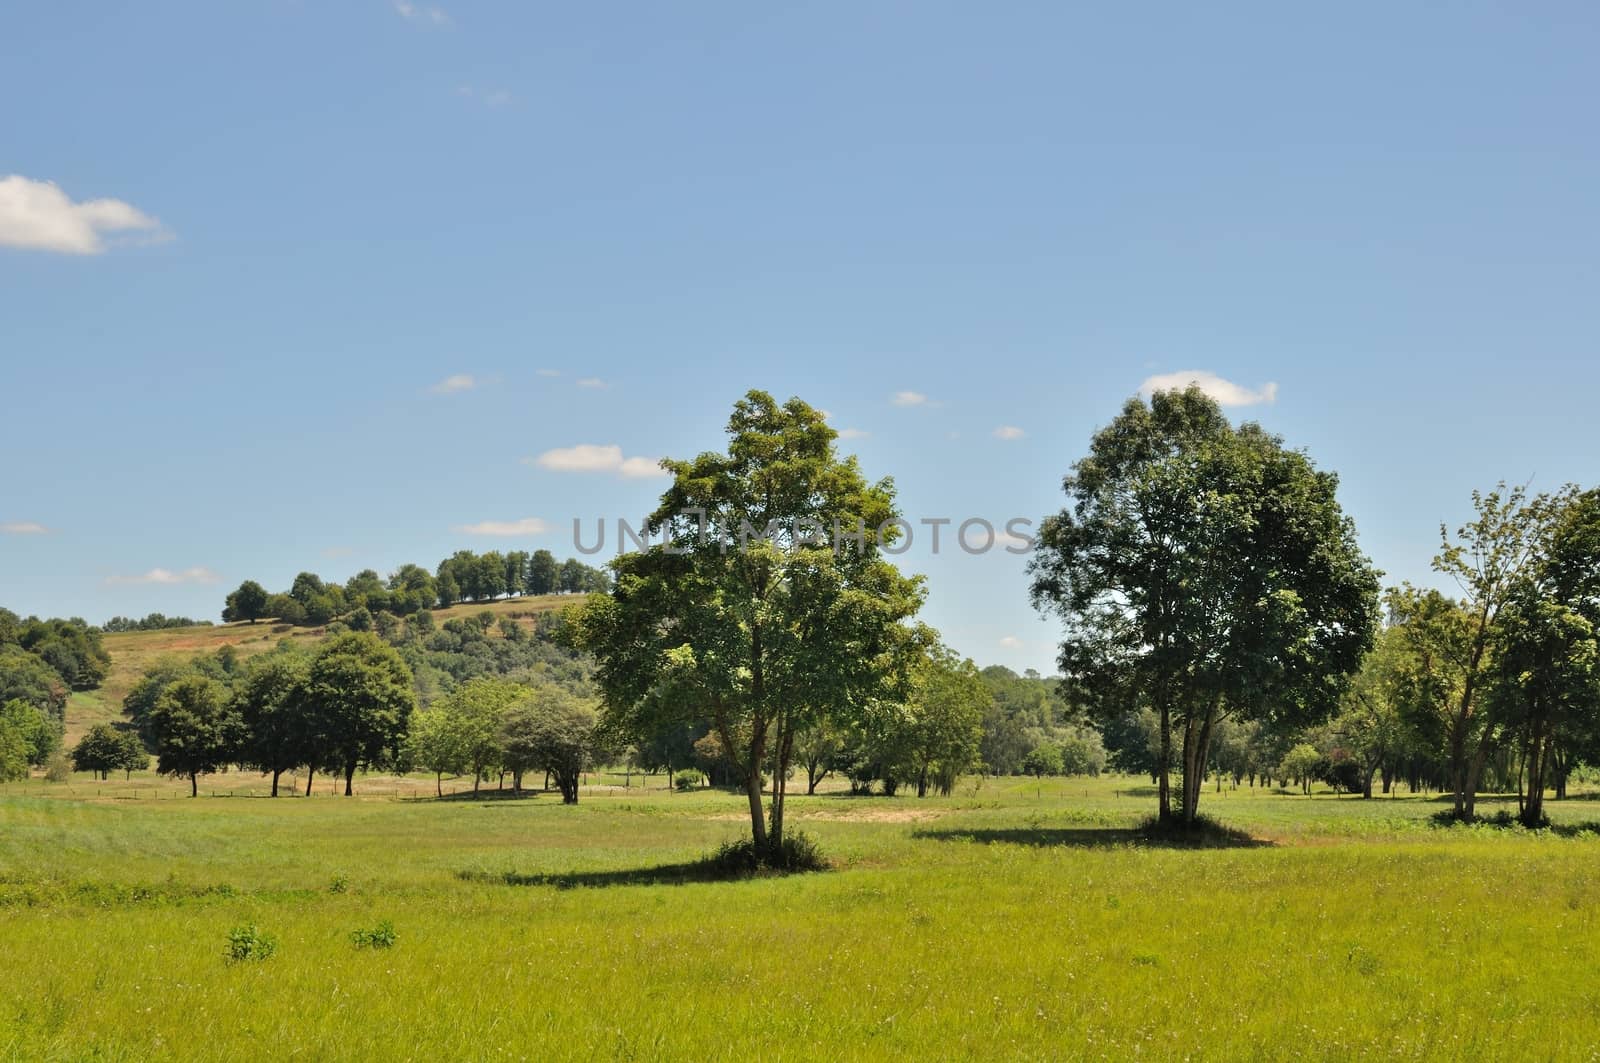 Trees in fields by BZH22